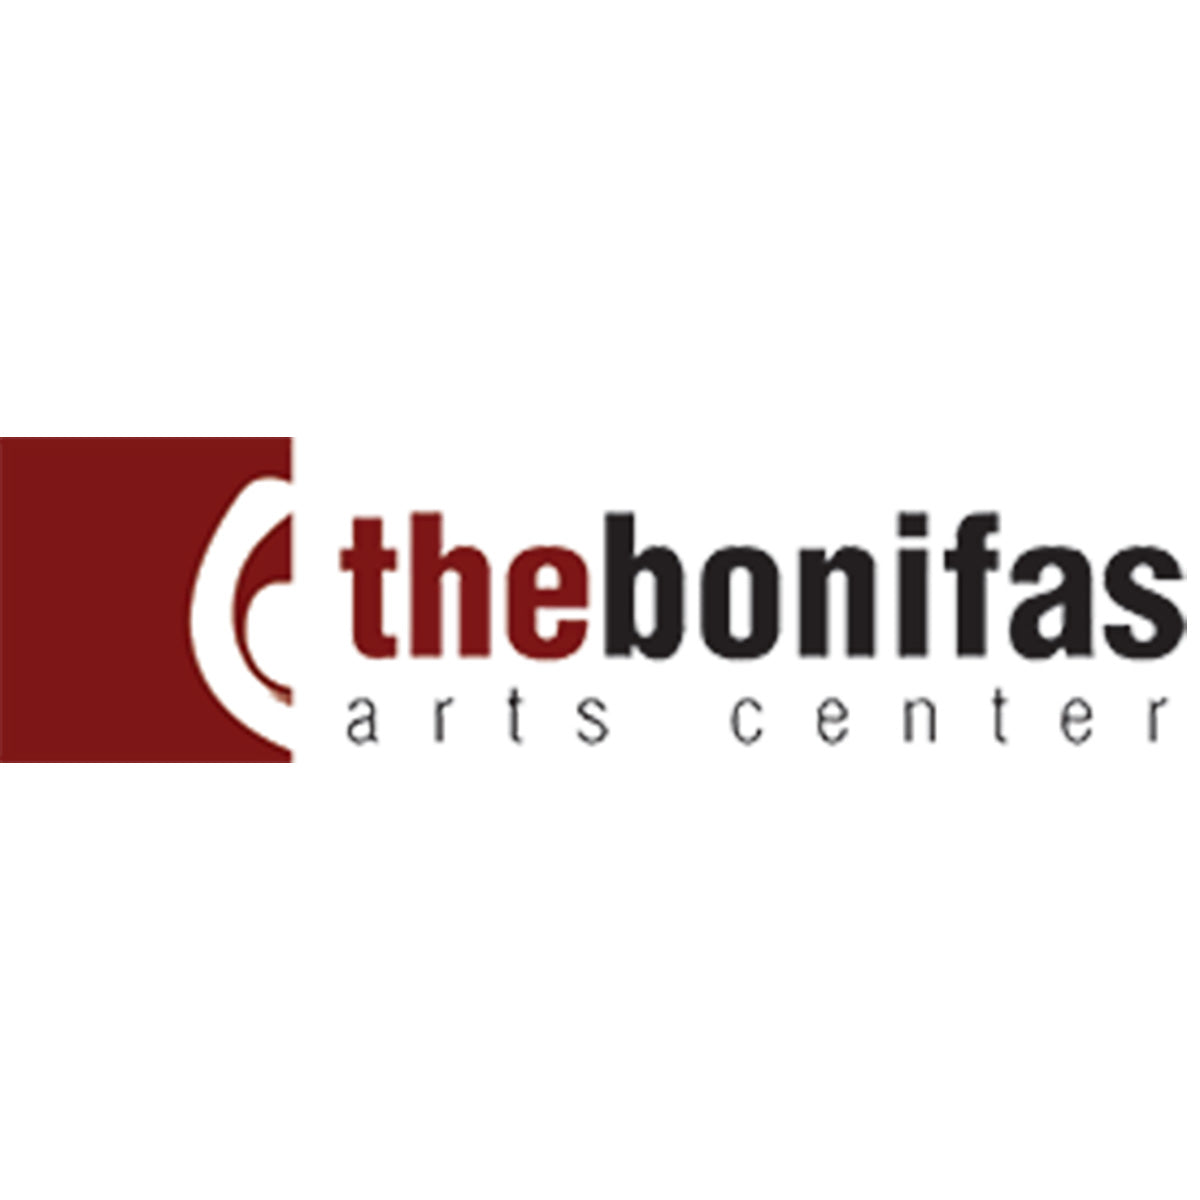 The Bonifas Arts Center